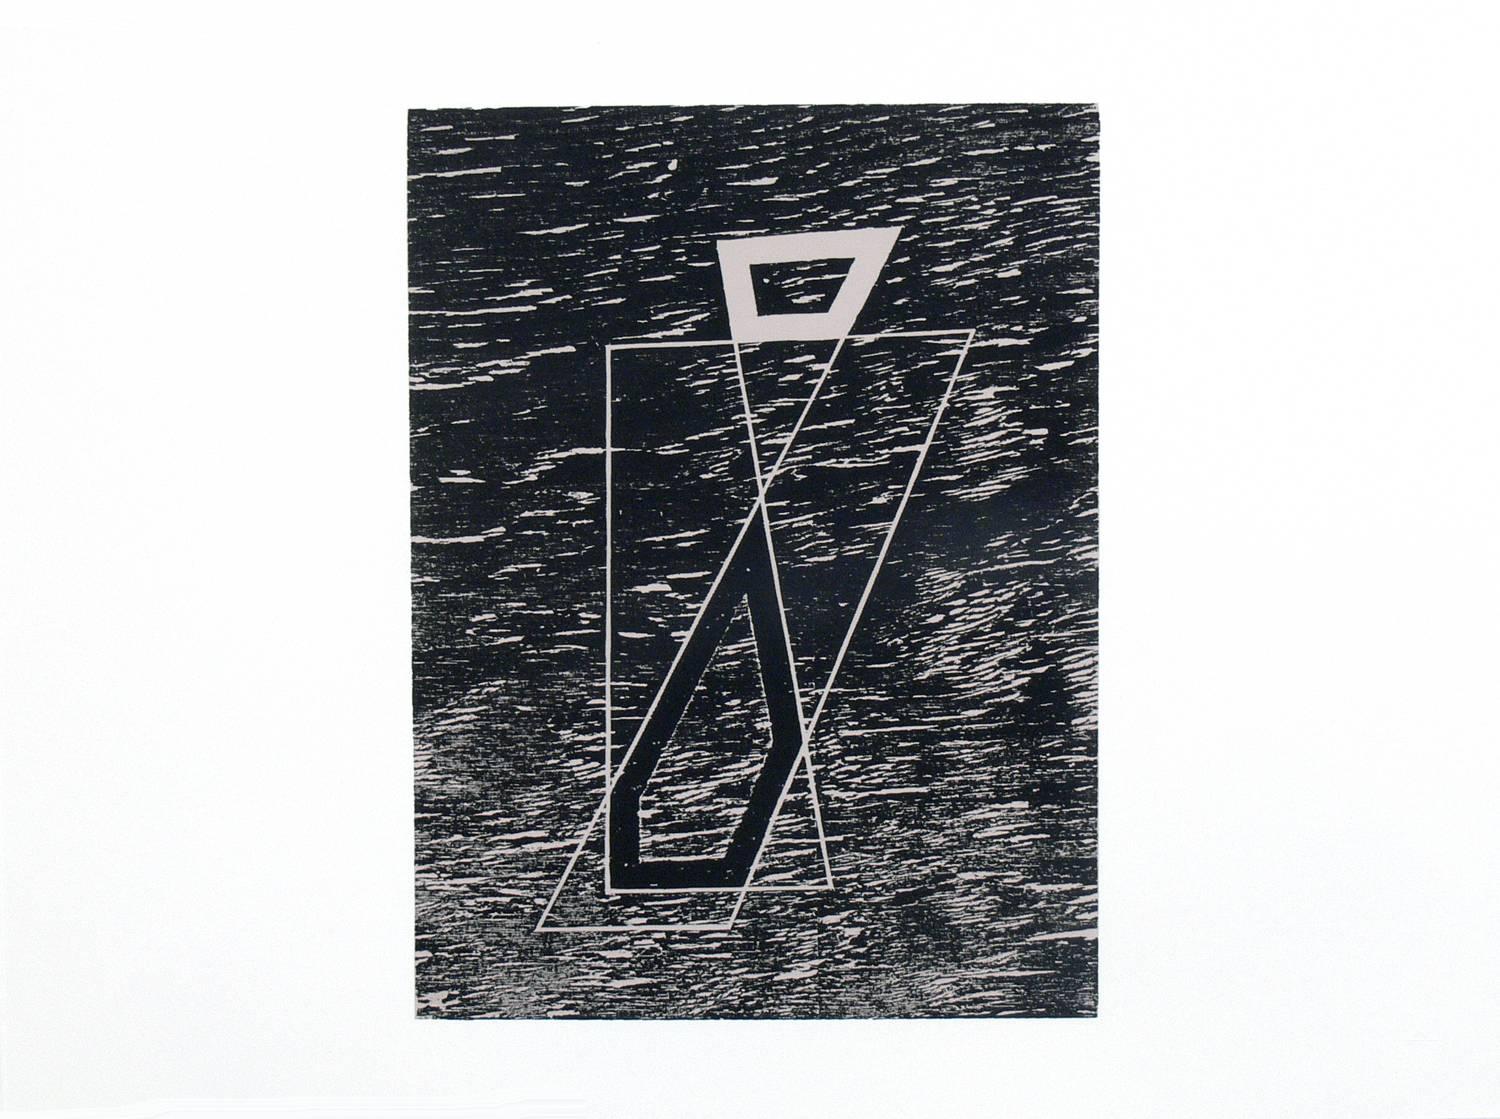 Lithographies abstraites de Josef Albers tirées de Formulation et Articulation, publiées par Harry N. Abrams Inc, New York, et Ives Sillman Inc, New Haven, vers 1972. Ces œuvres proviennent du portefeuille II, dossier 20. Ils ont été encadrés dans